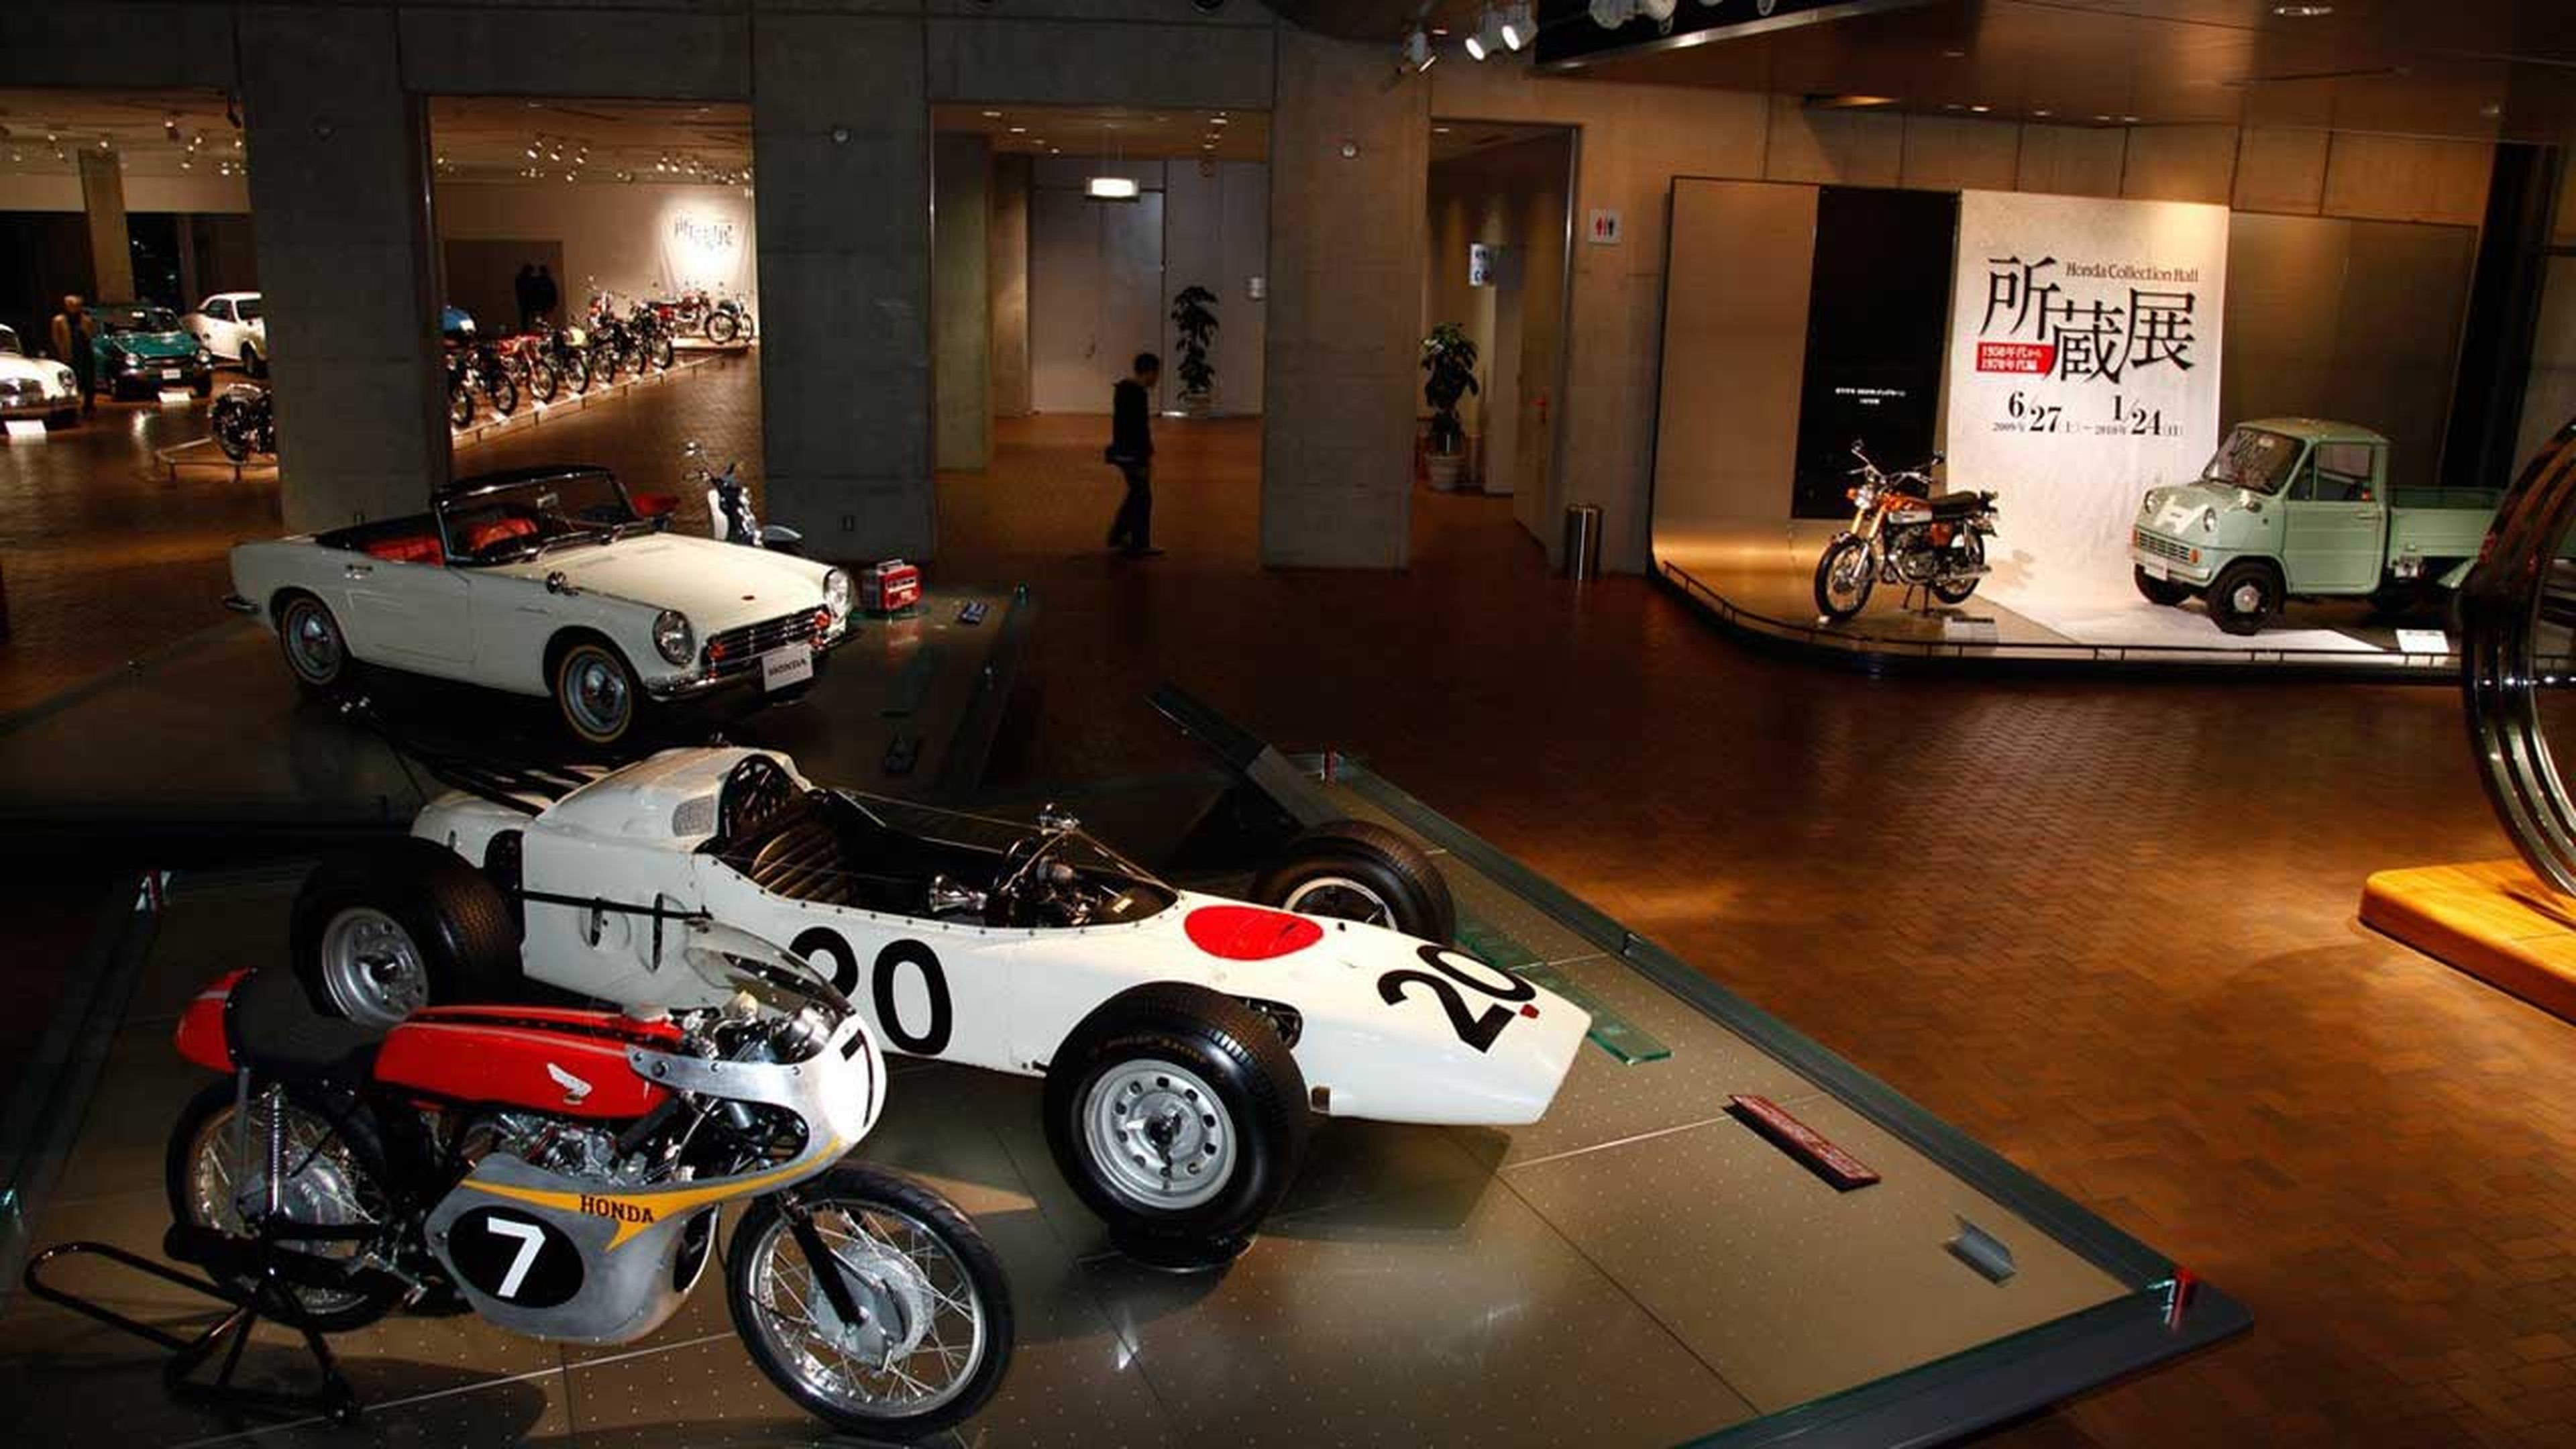 Visita virtual por el museo de Honda, el Honda Collection Hall